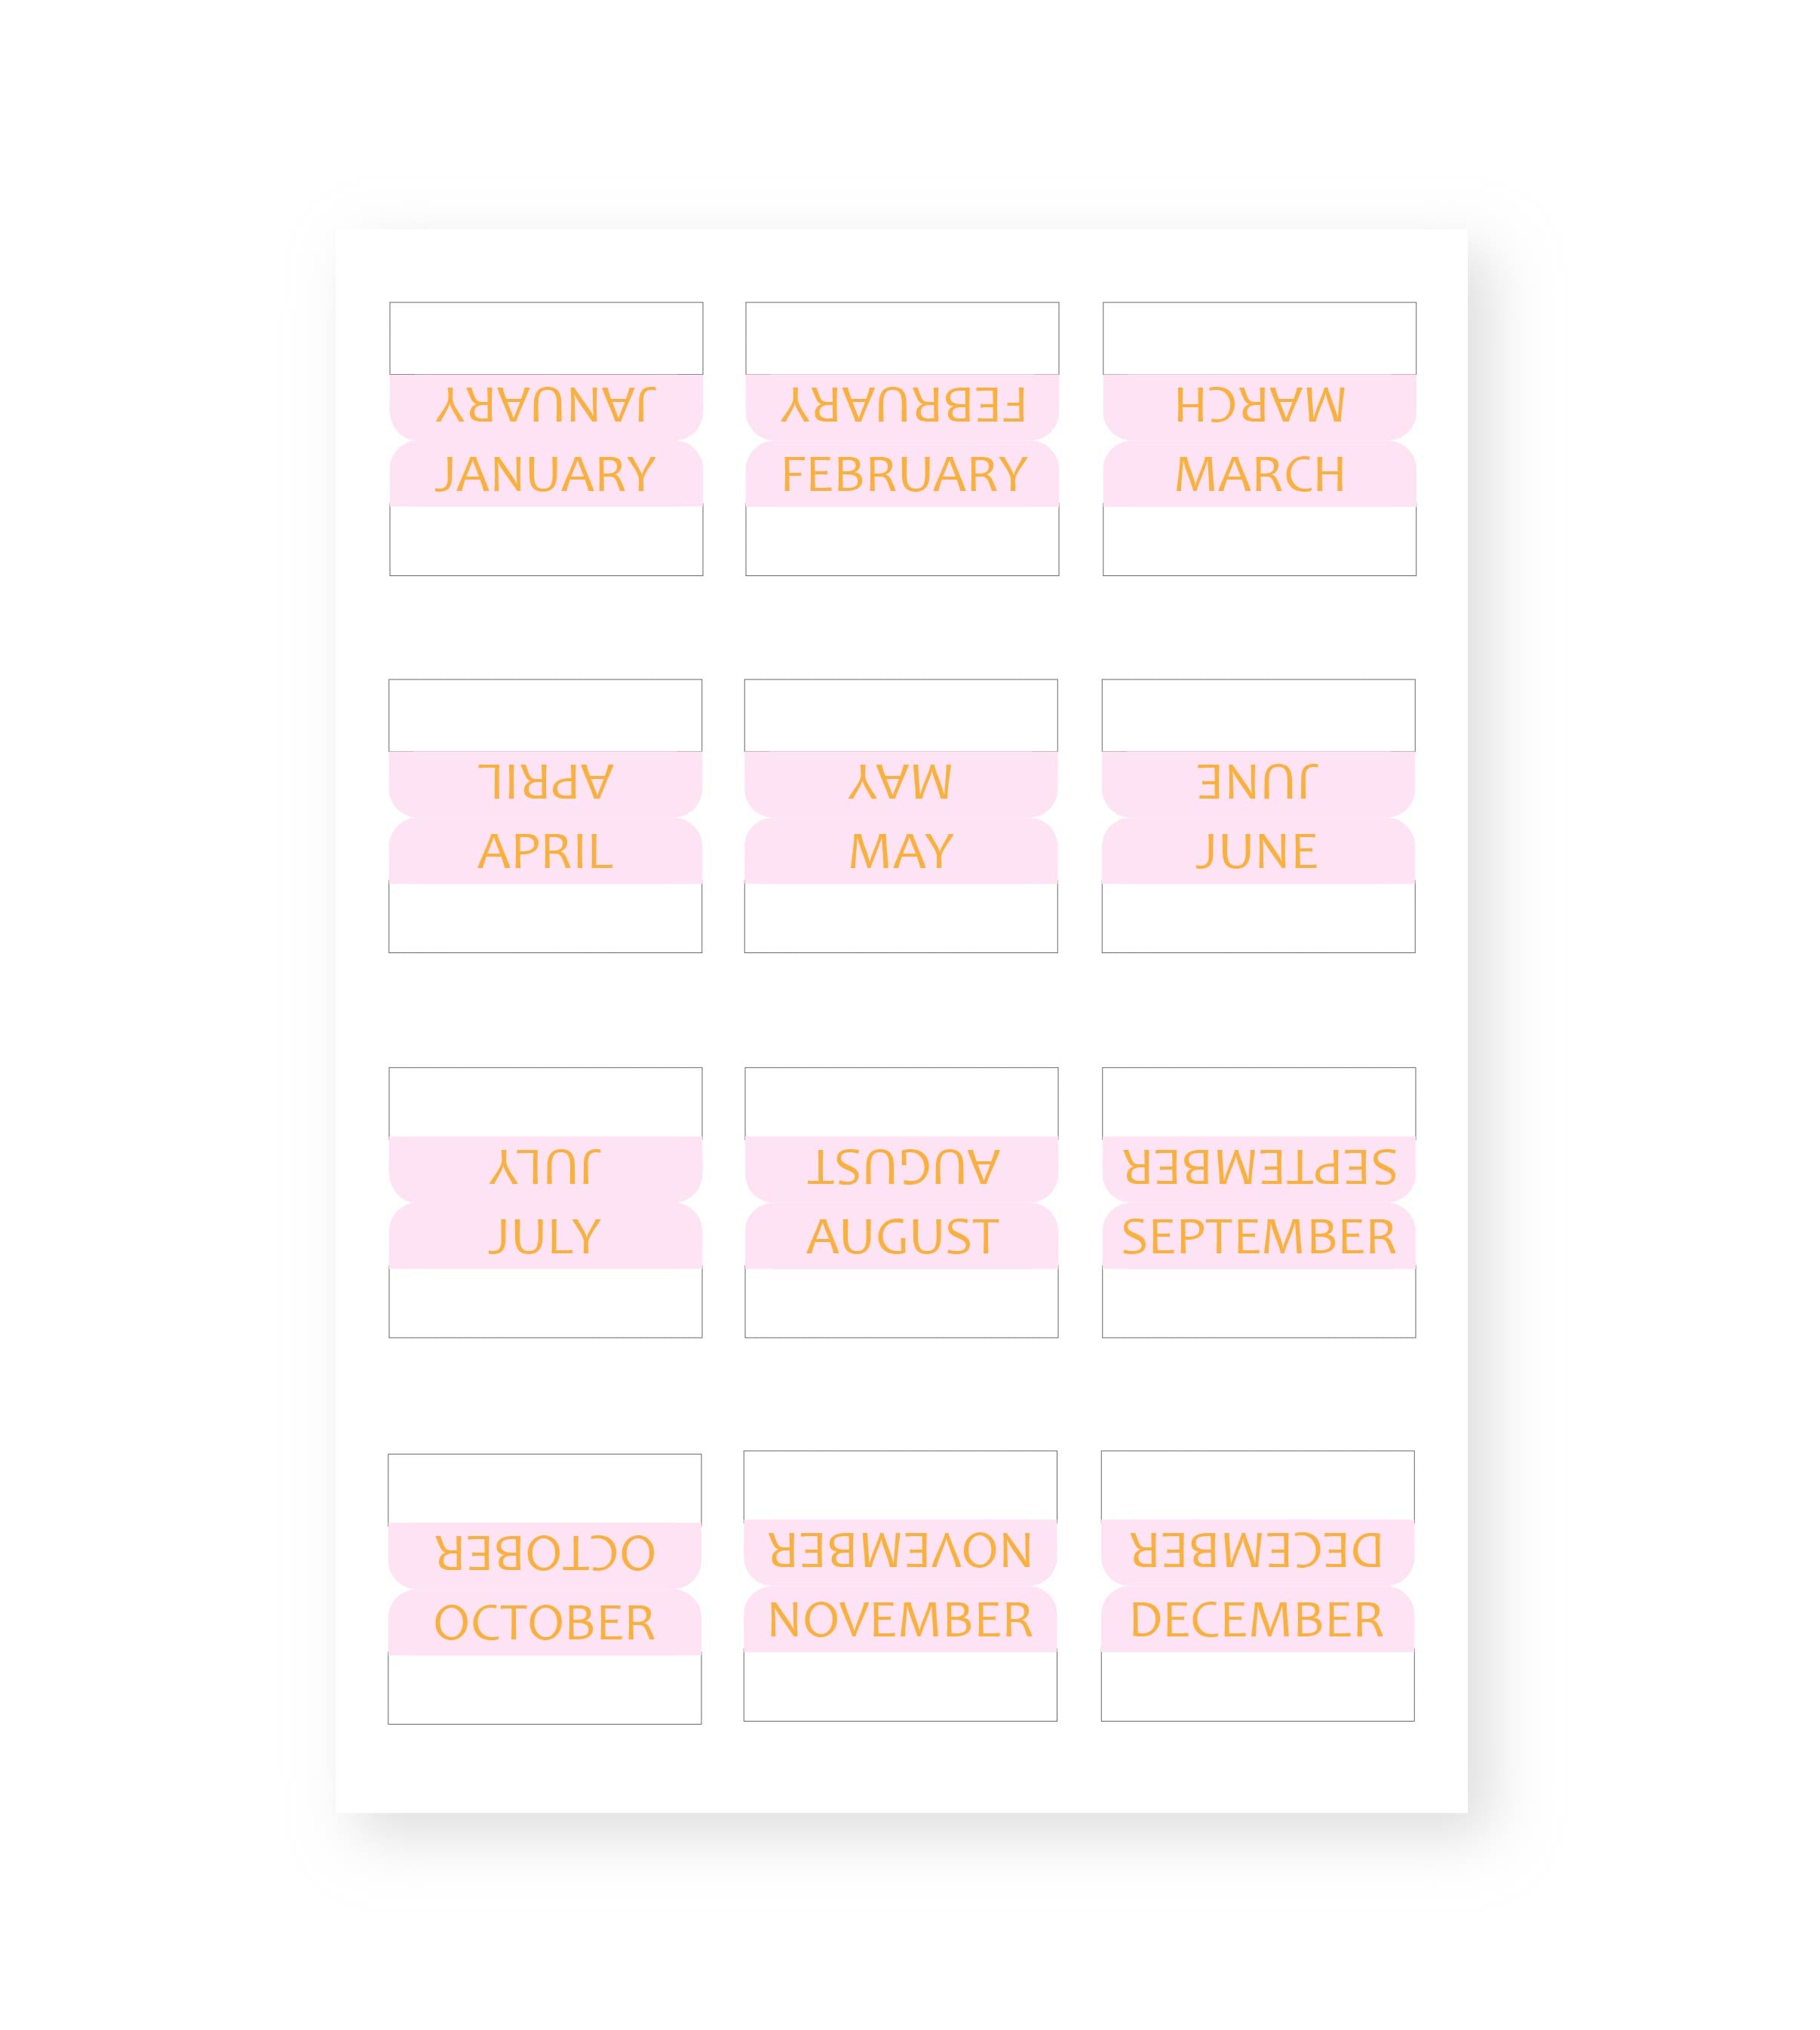  LALAFINA 5 Sets Calendar Index Sticker Monthly Index